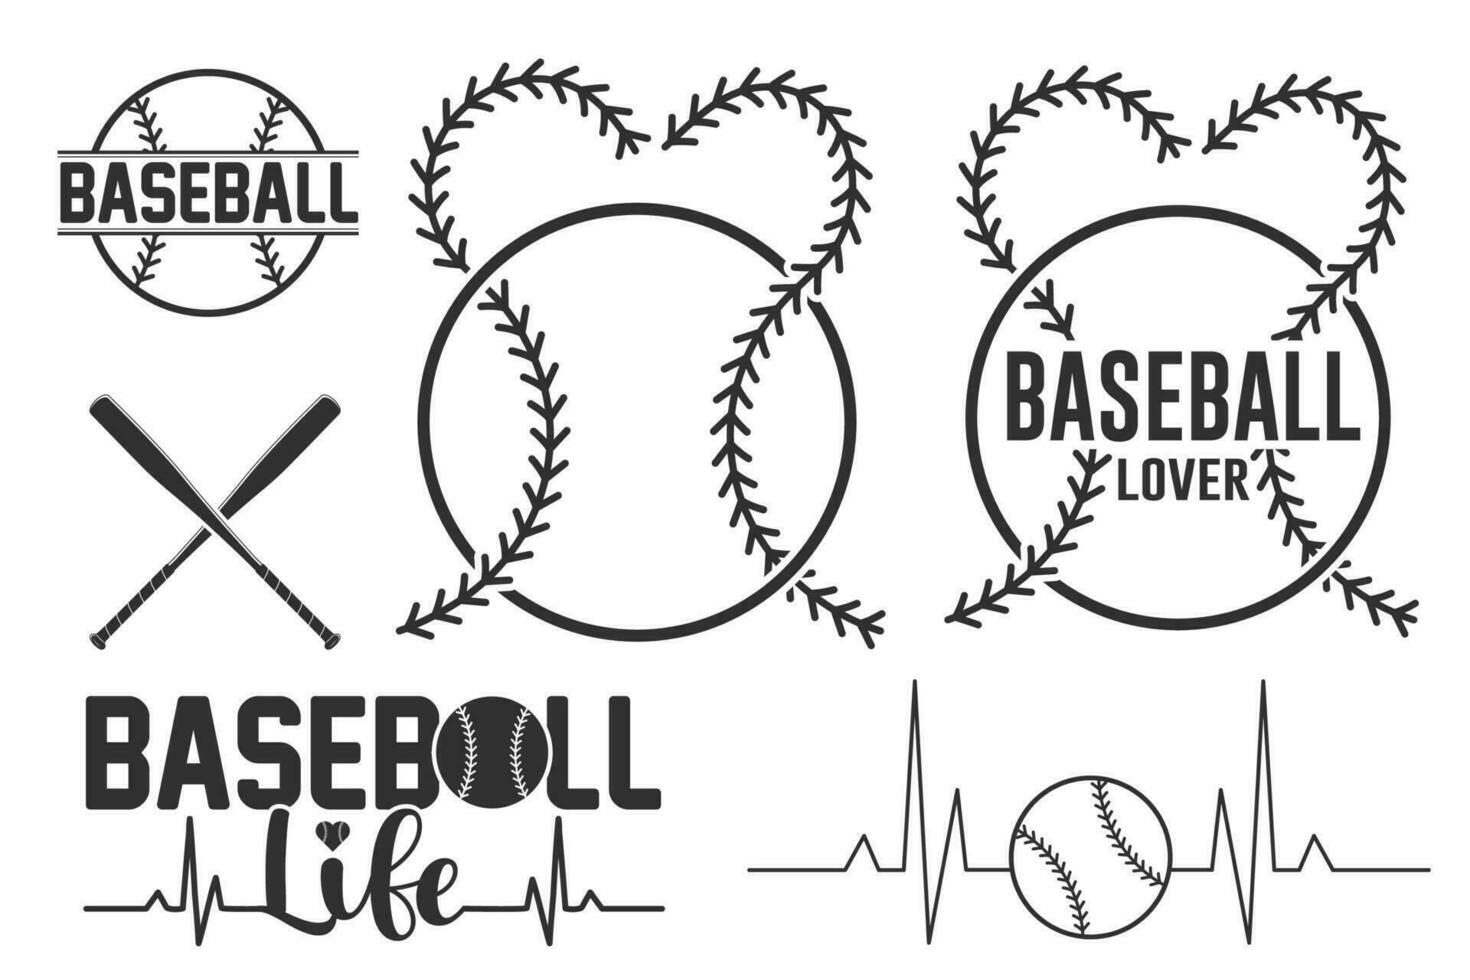 baseboll kärlek vektor, sporter, baseboll älskare, vektor, silhuett, sporter silhuett, baseboll logotyp, spel vektor, spel turnering, baseboll turnering, baseboll typografi, mästare liga vektor